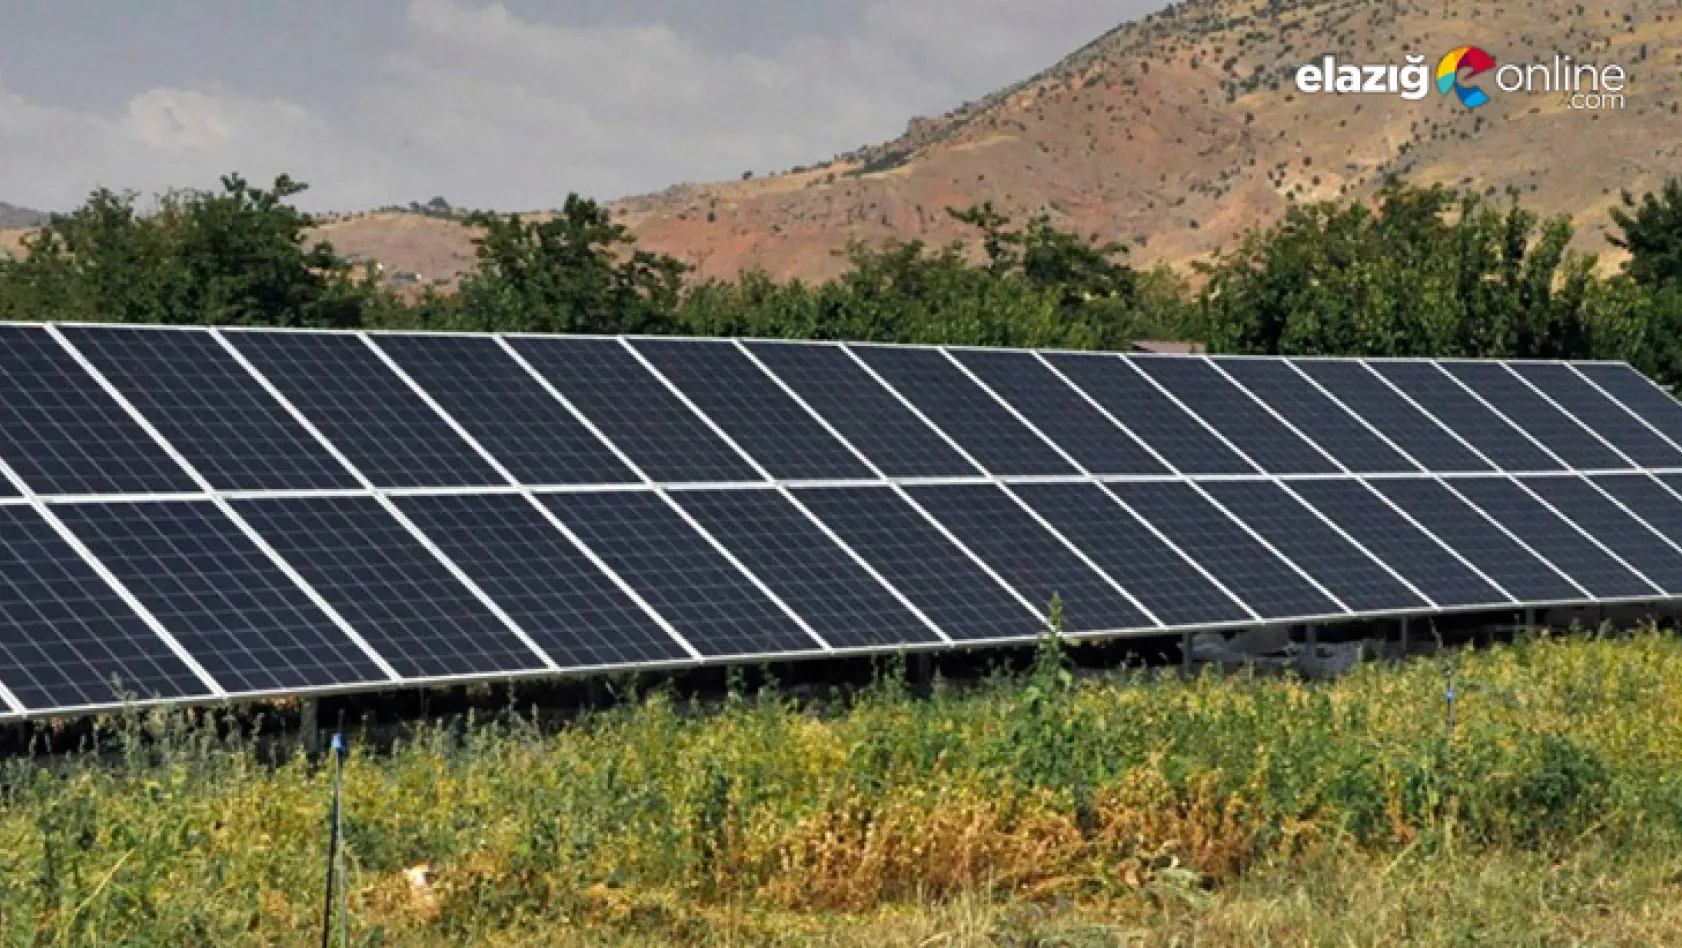 Elektrik faturalarından bıkan Baskilliler kendi güneş enerjilerini kurdu